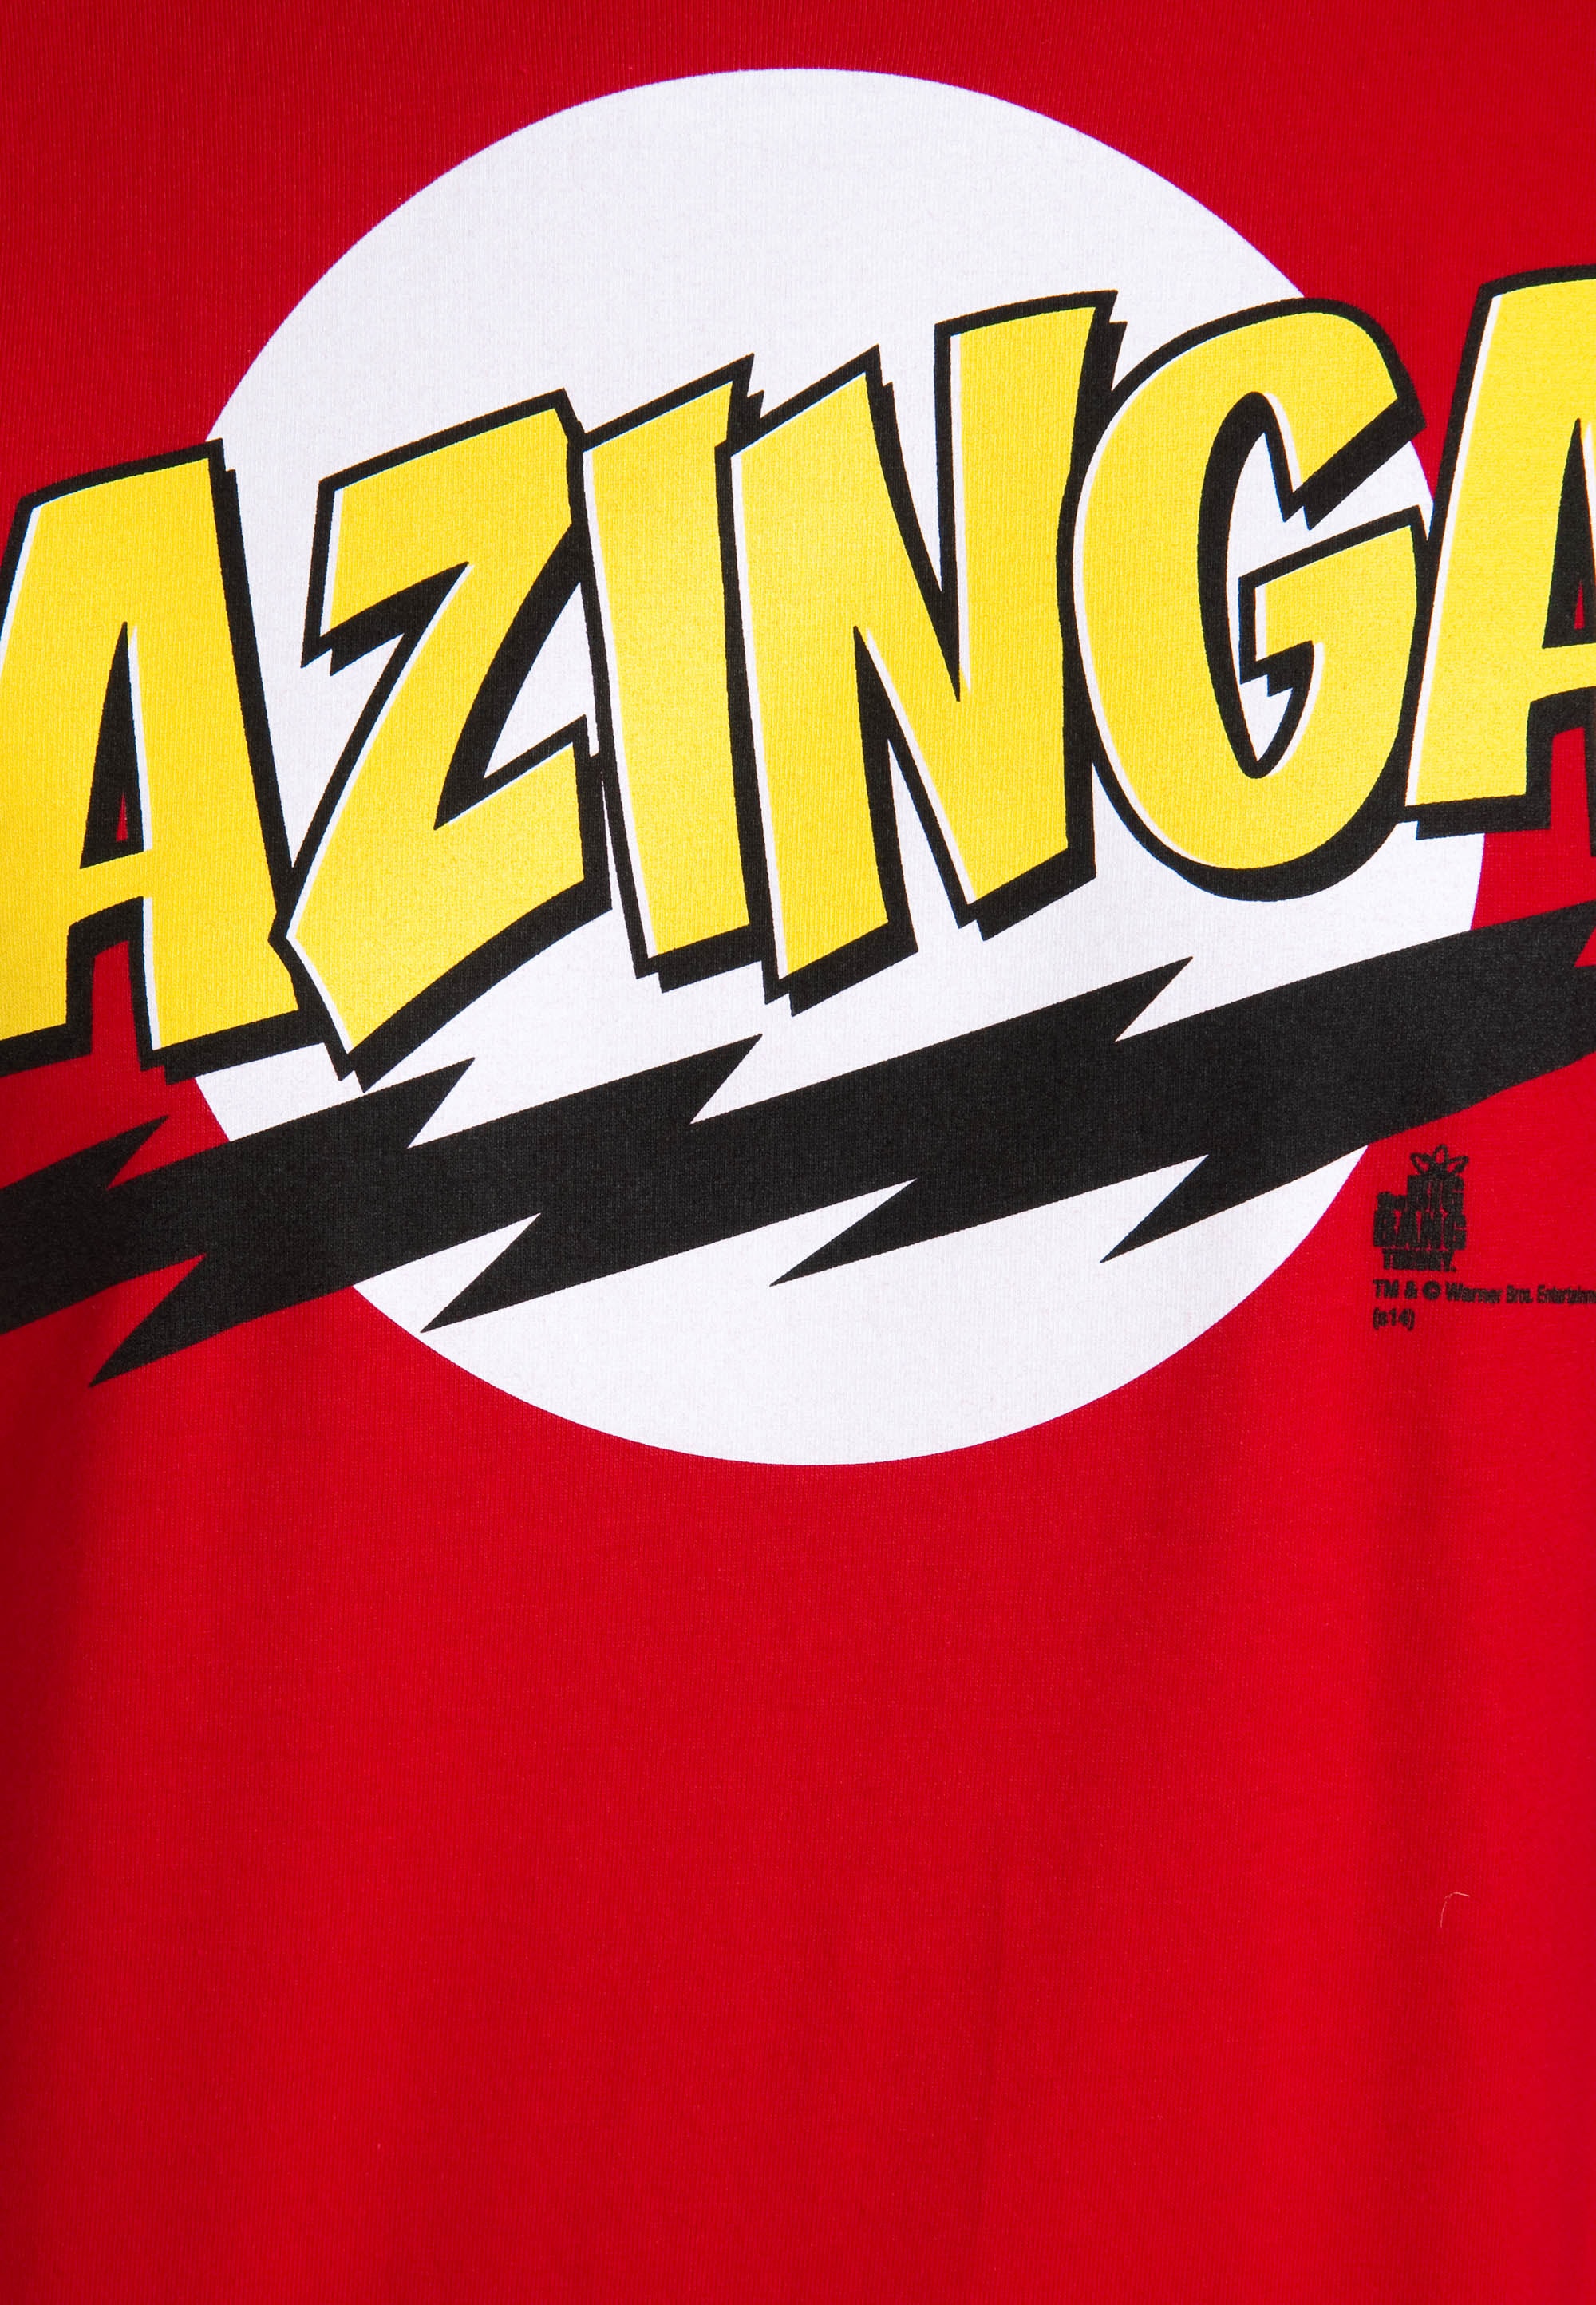 LOGOSHIRT T-Shirt »Bazinga«, mit lizenziertem Frontprint